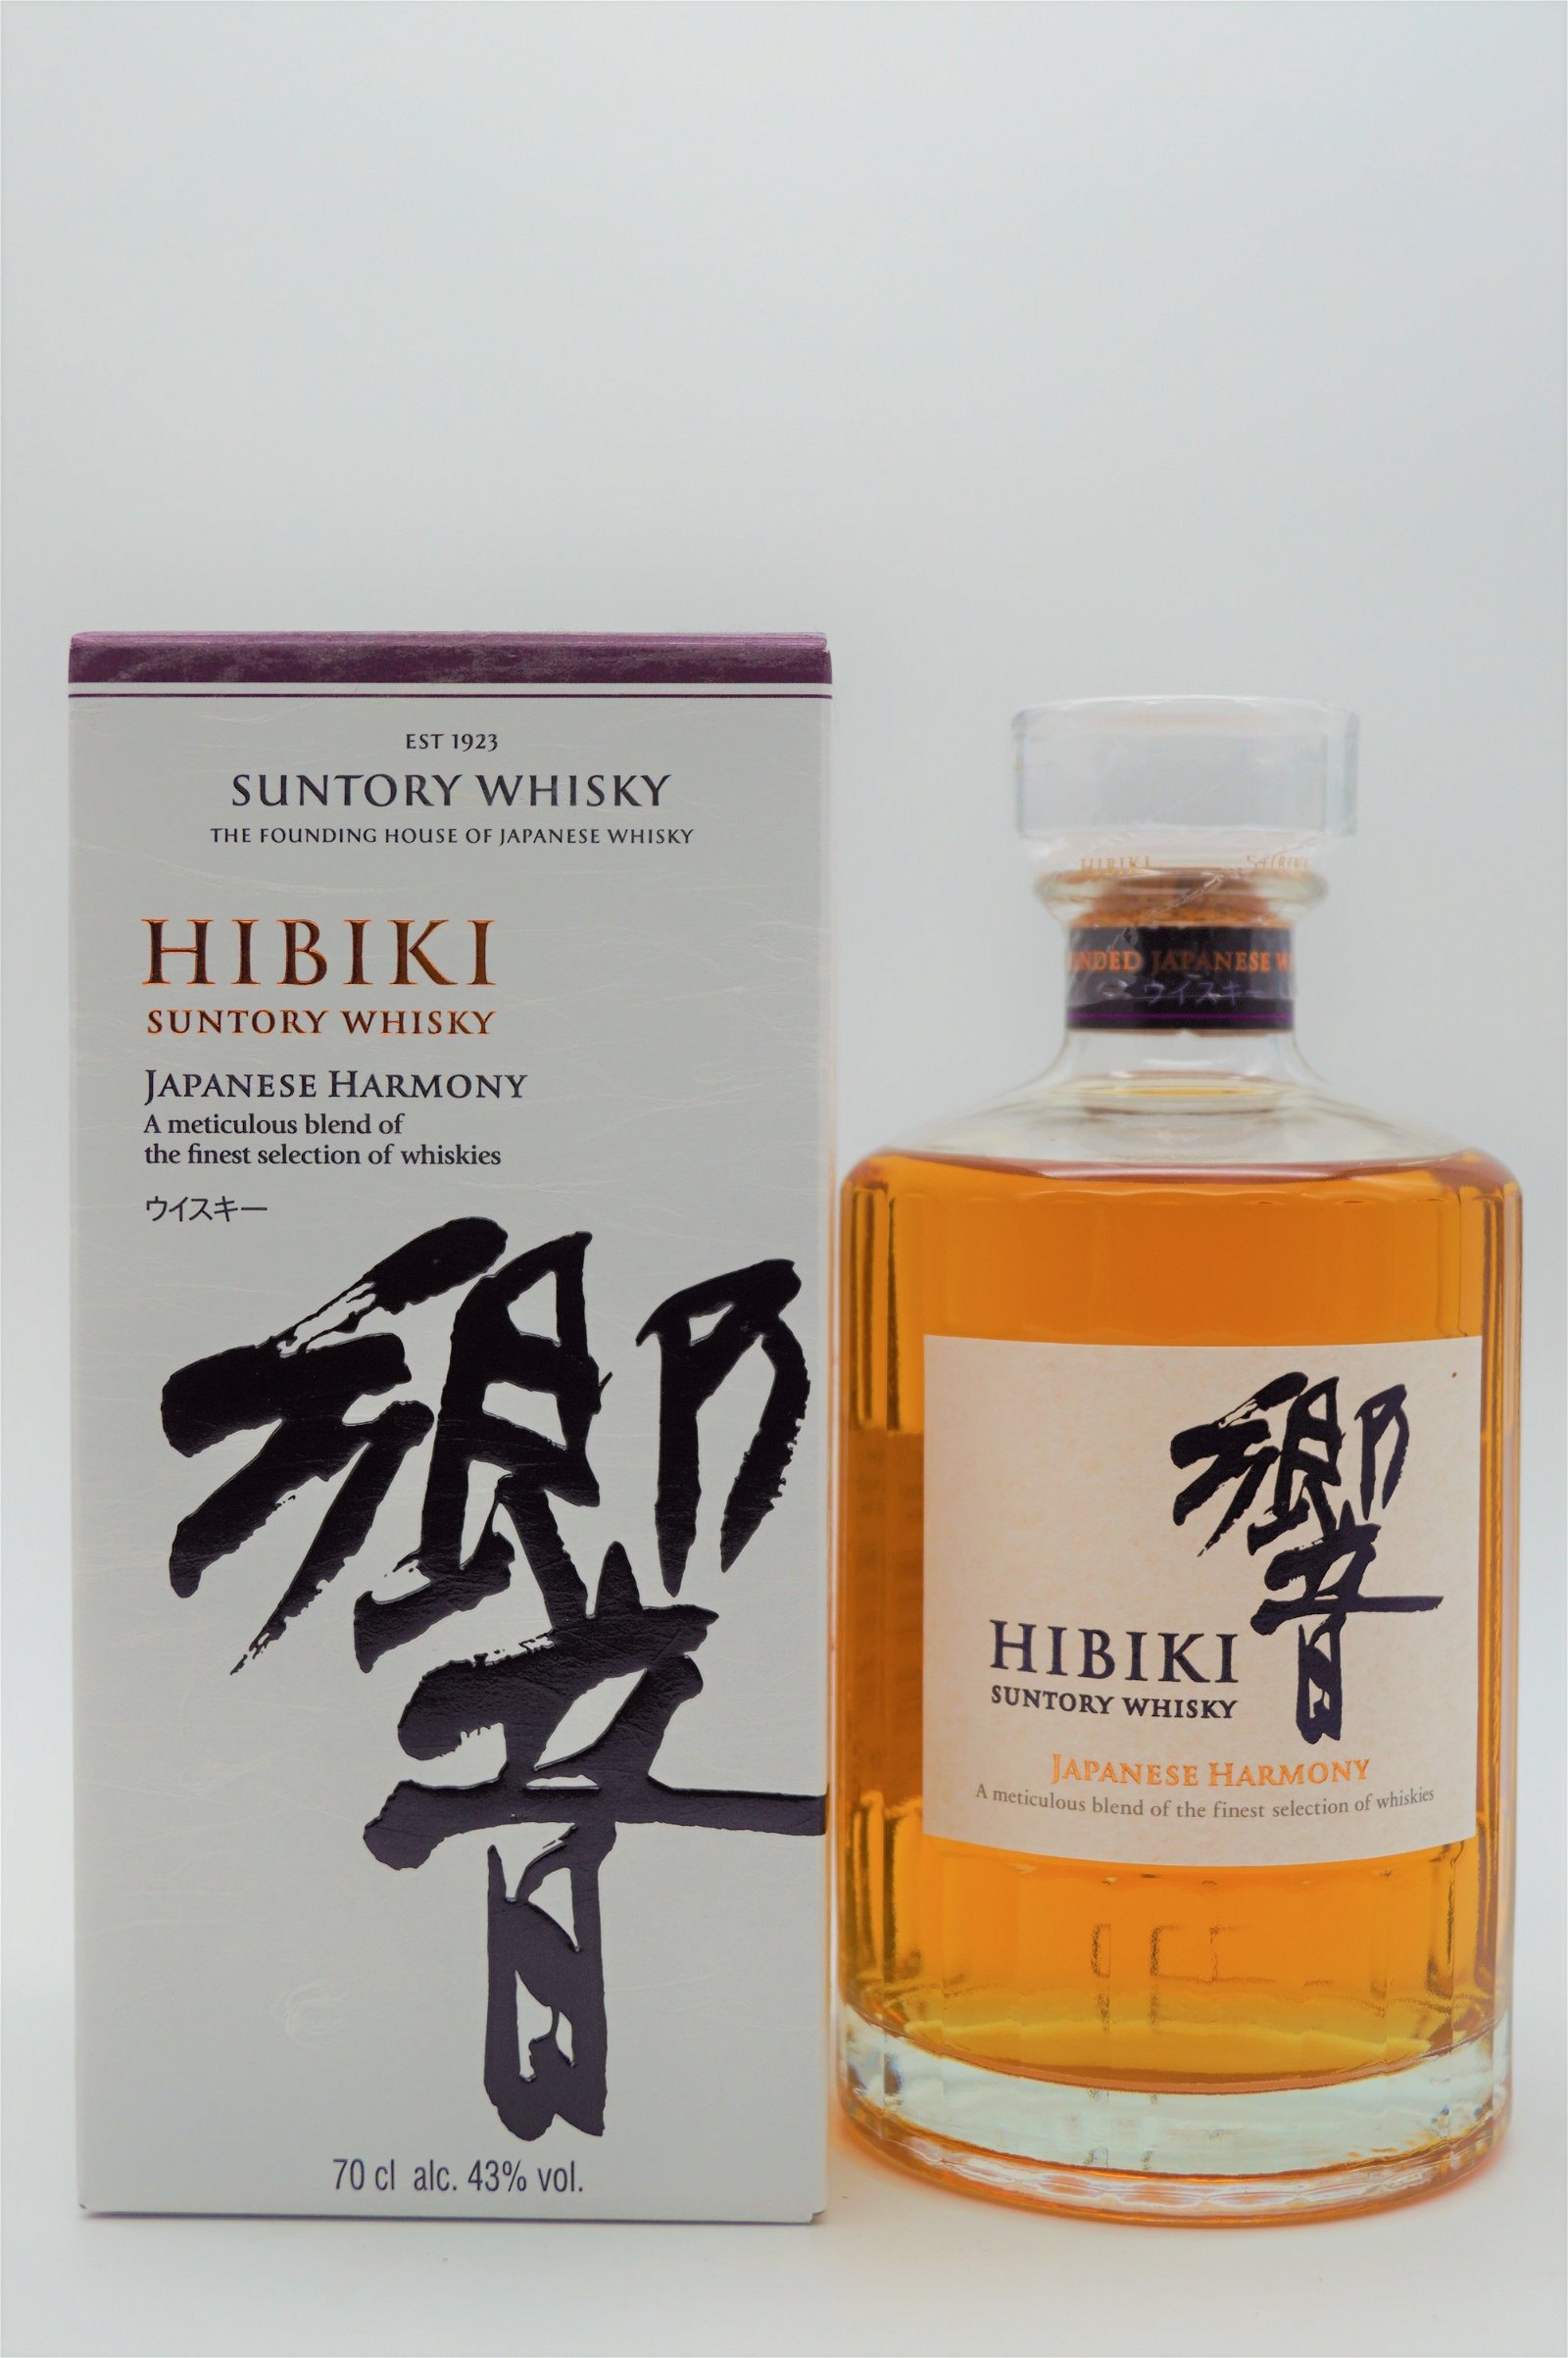 Suntory Whisky Hibiki Japanese Harmony Blended Japanese Whisky